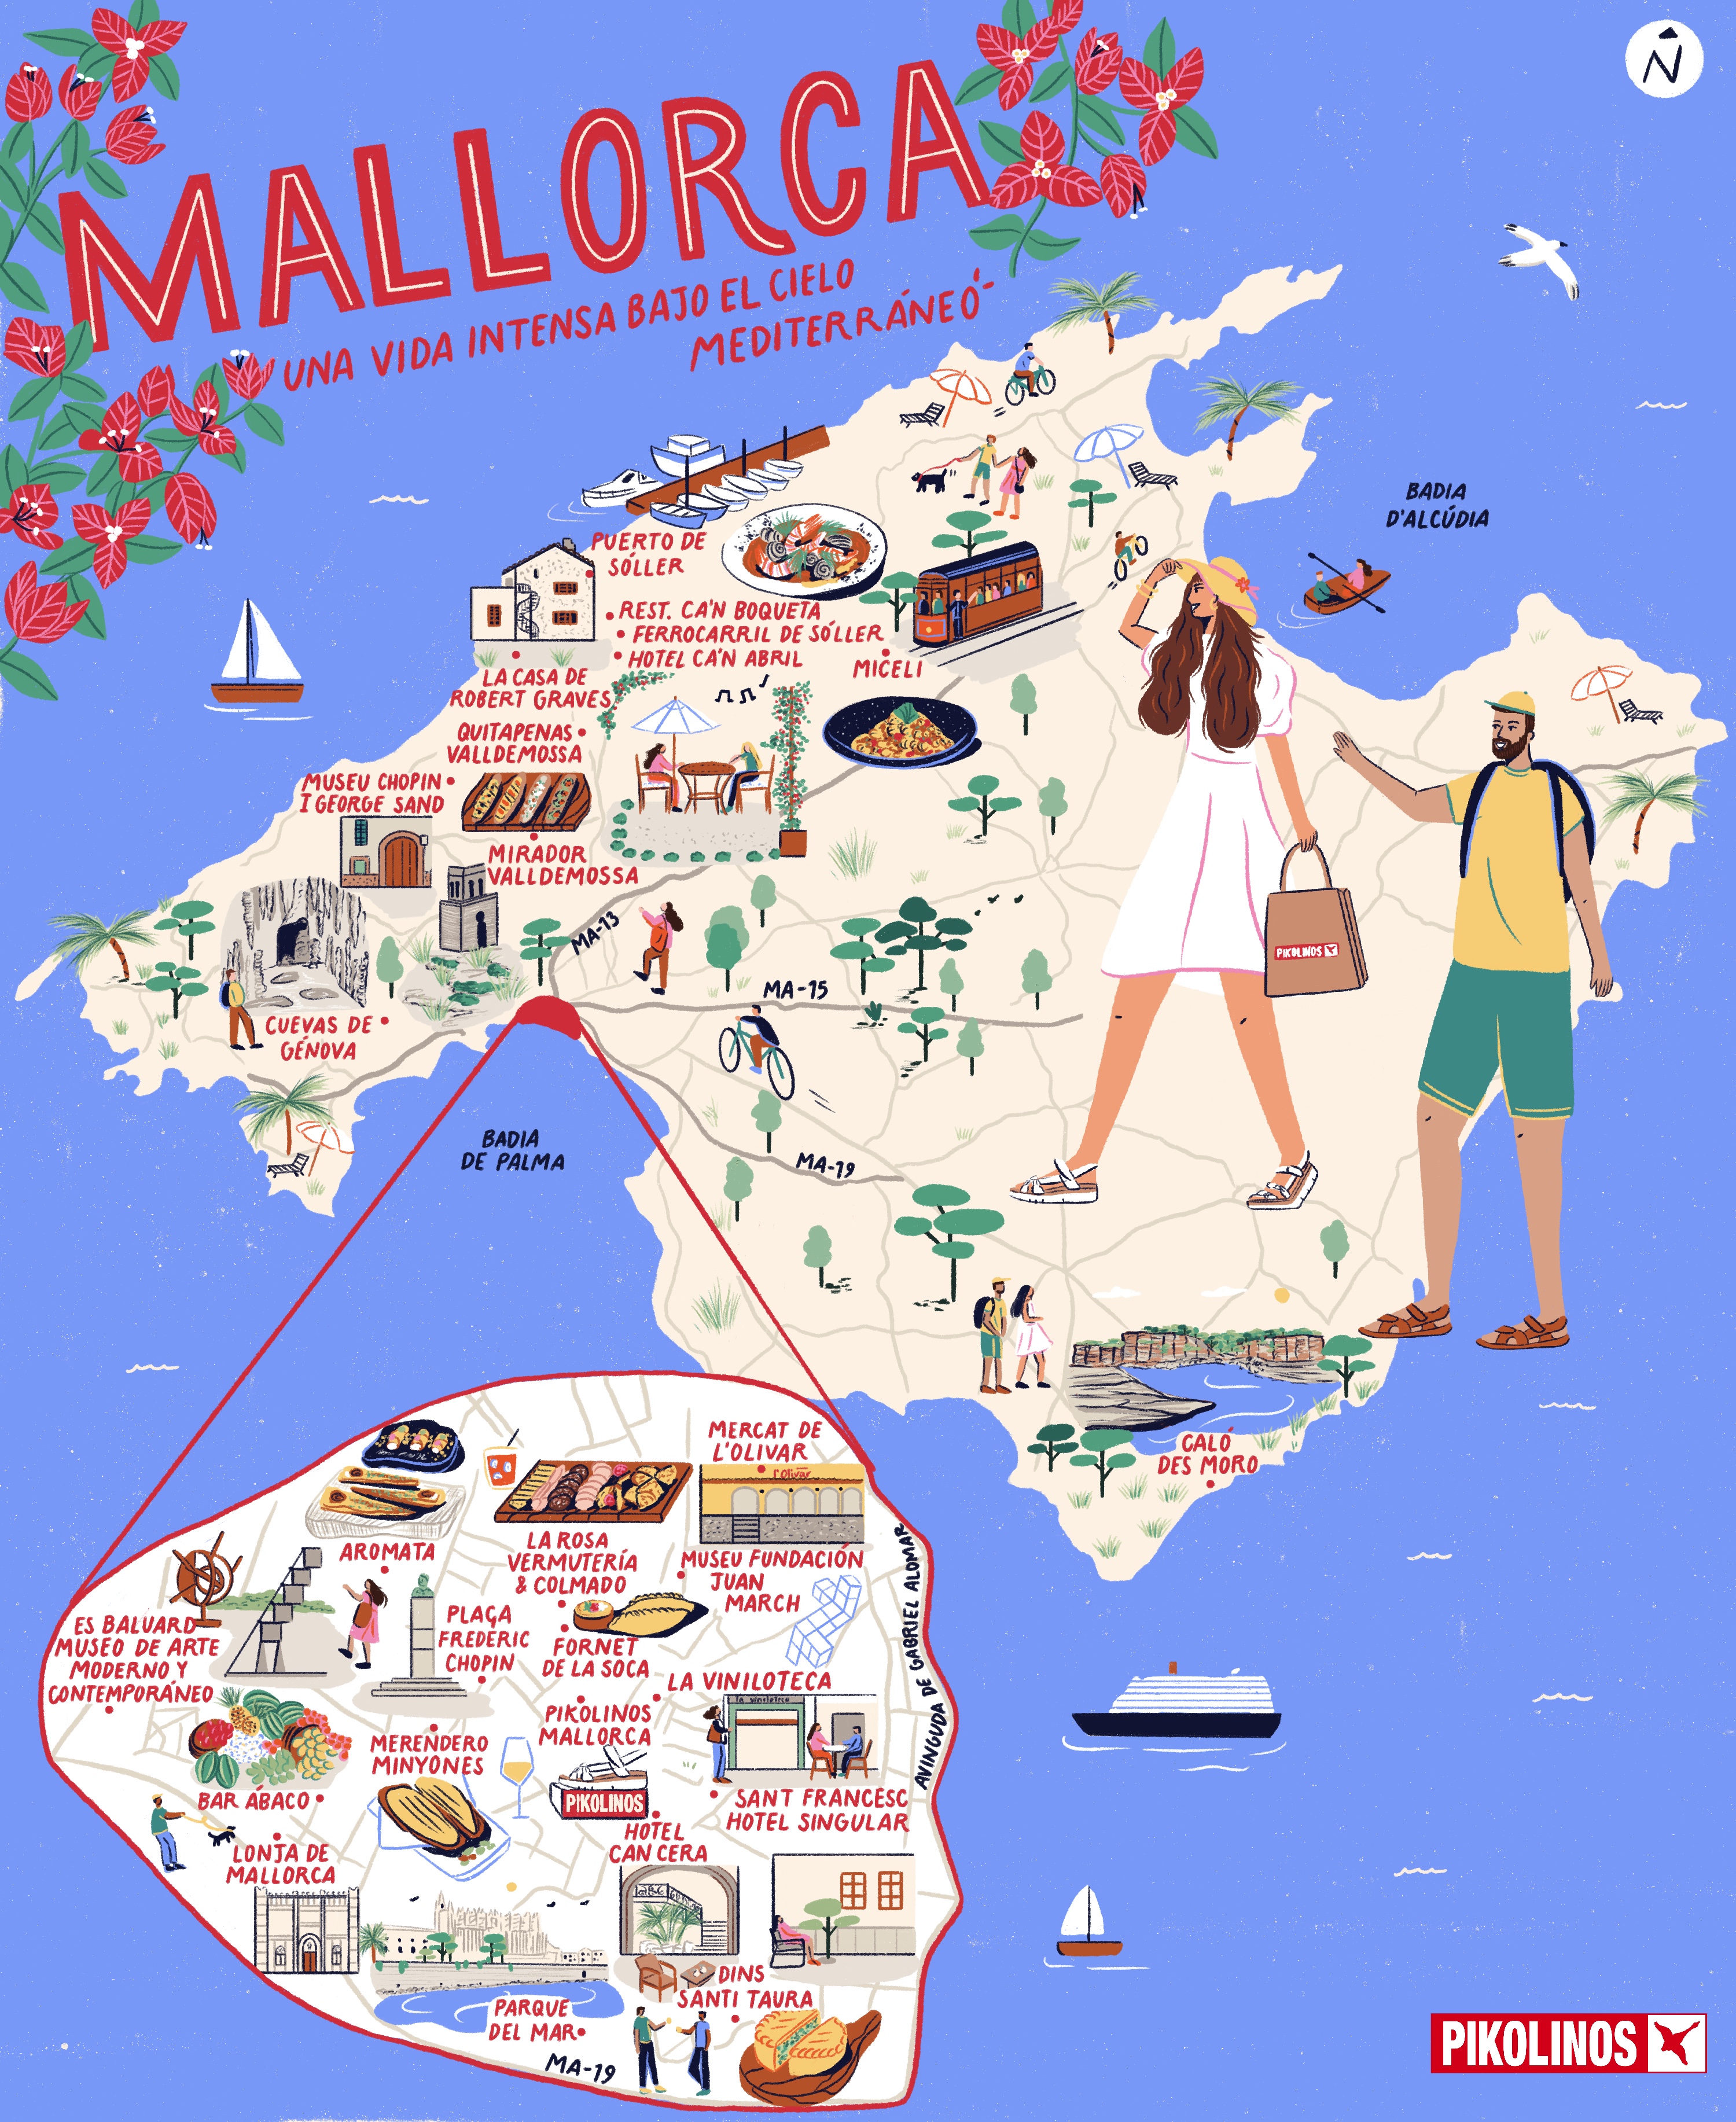 2.	Ilustración de mapa de Mallorca con dibujos de cosas interesantes del lugar